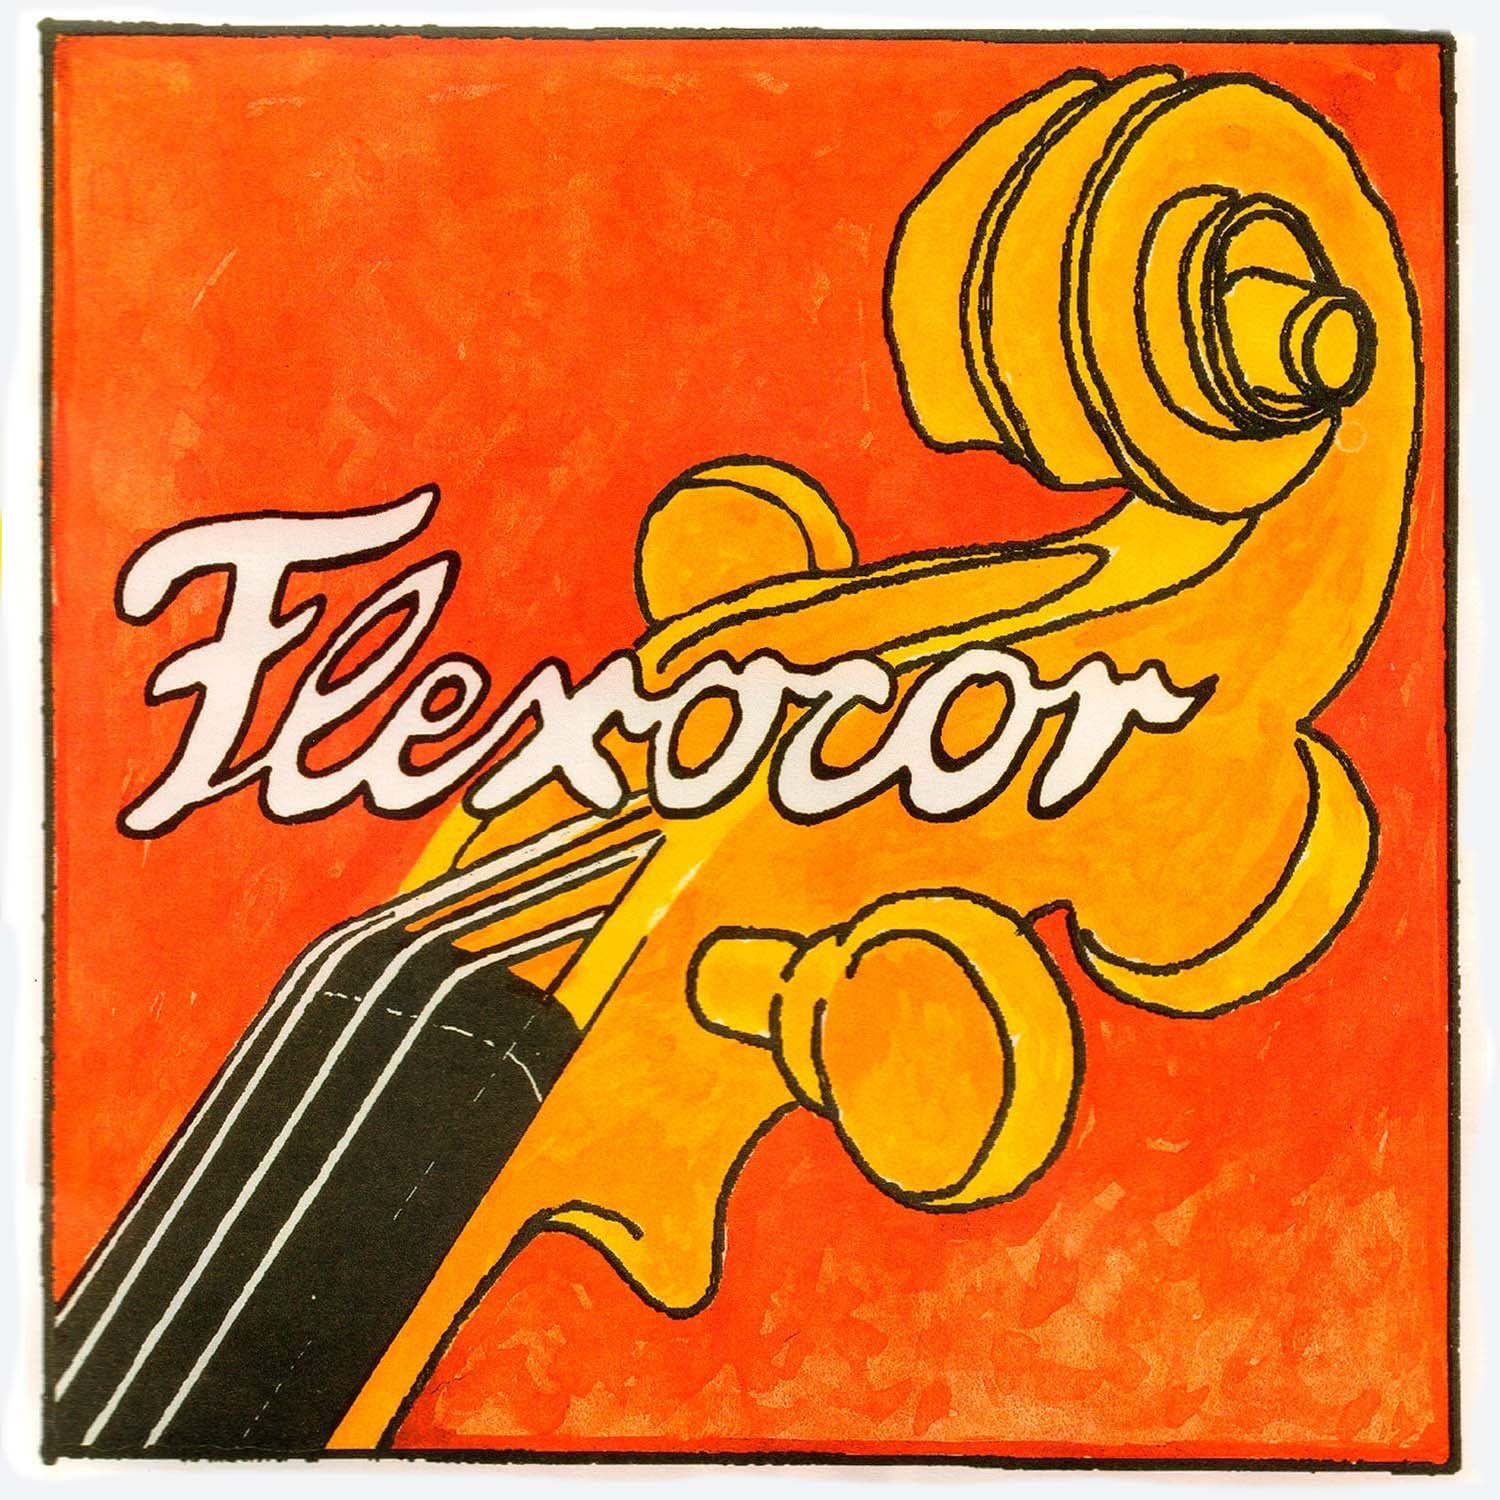 Pirastro Flexocor Cello C String